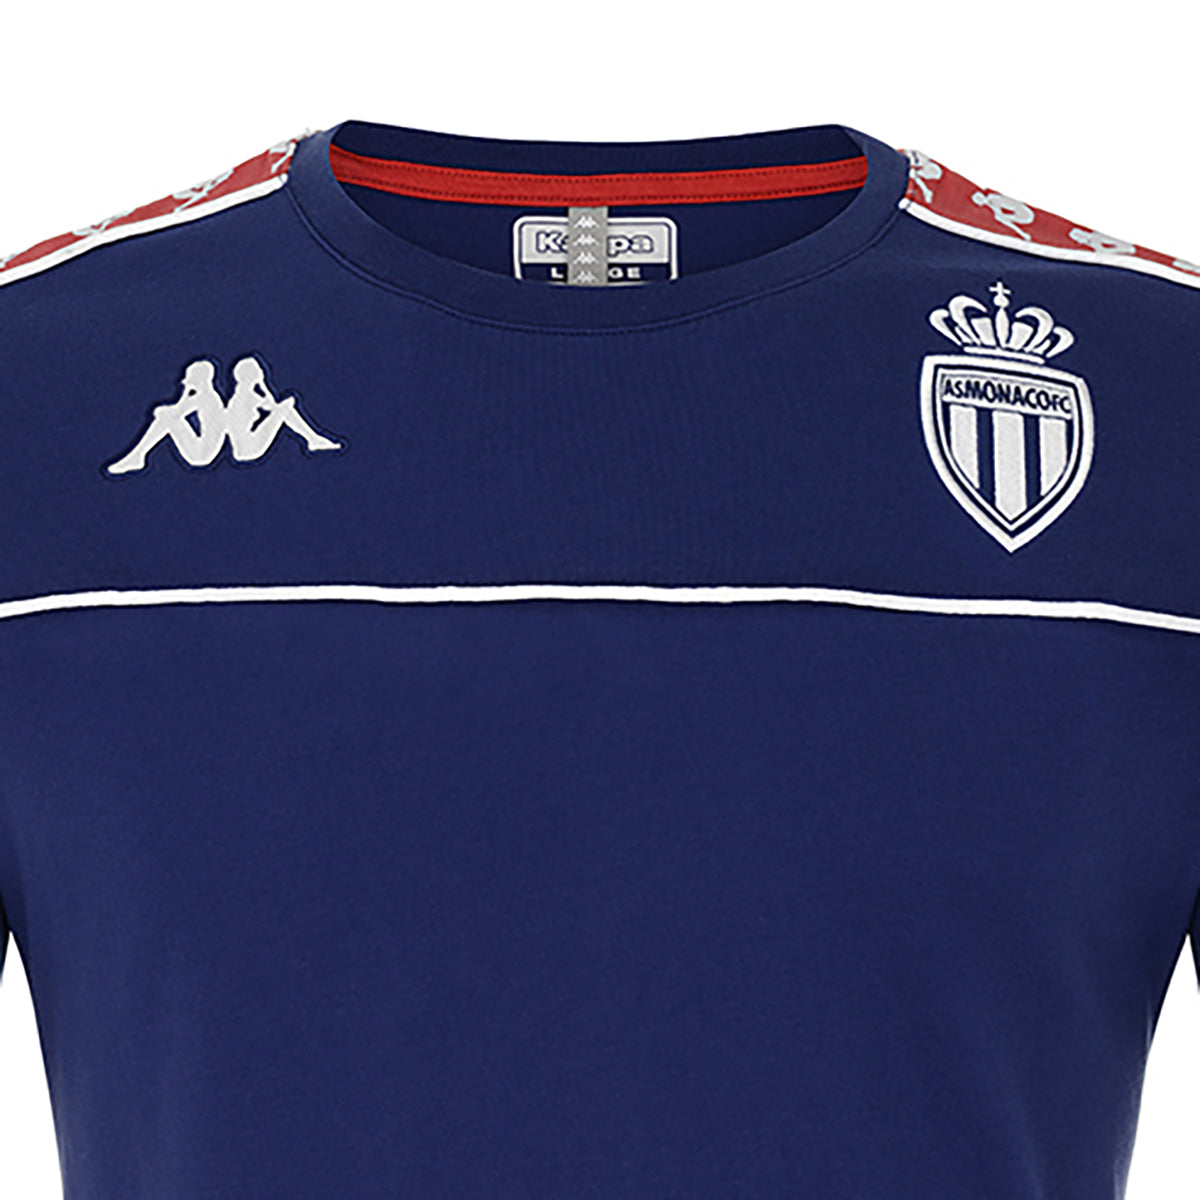 T-shirt Arari AS Monaco Bleu enfant - image 3